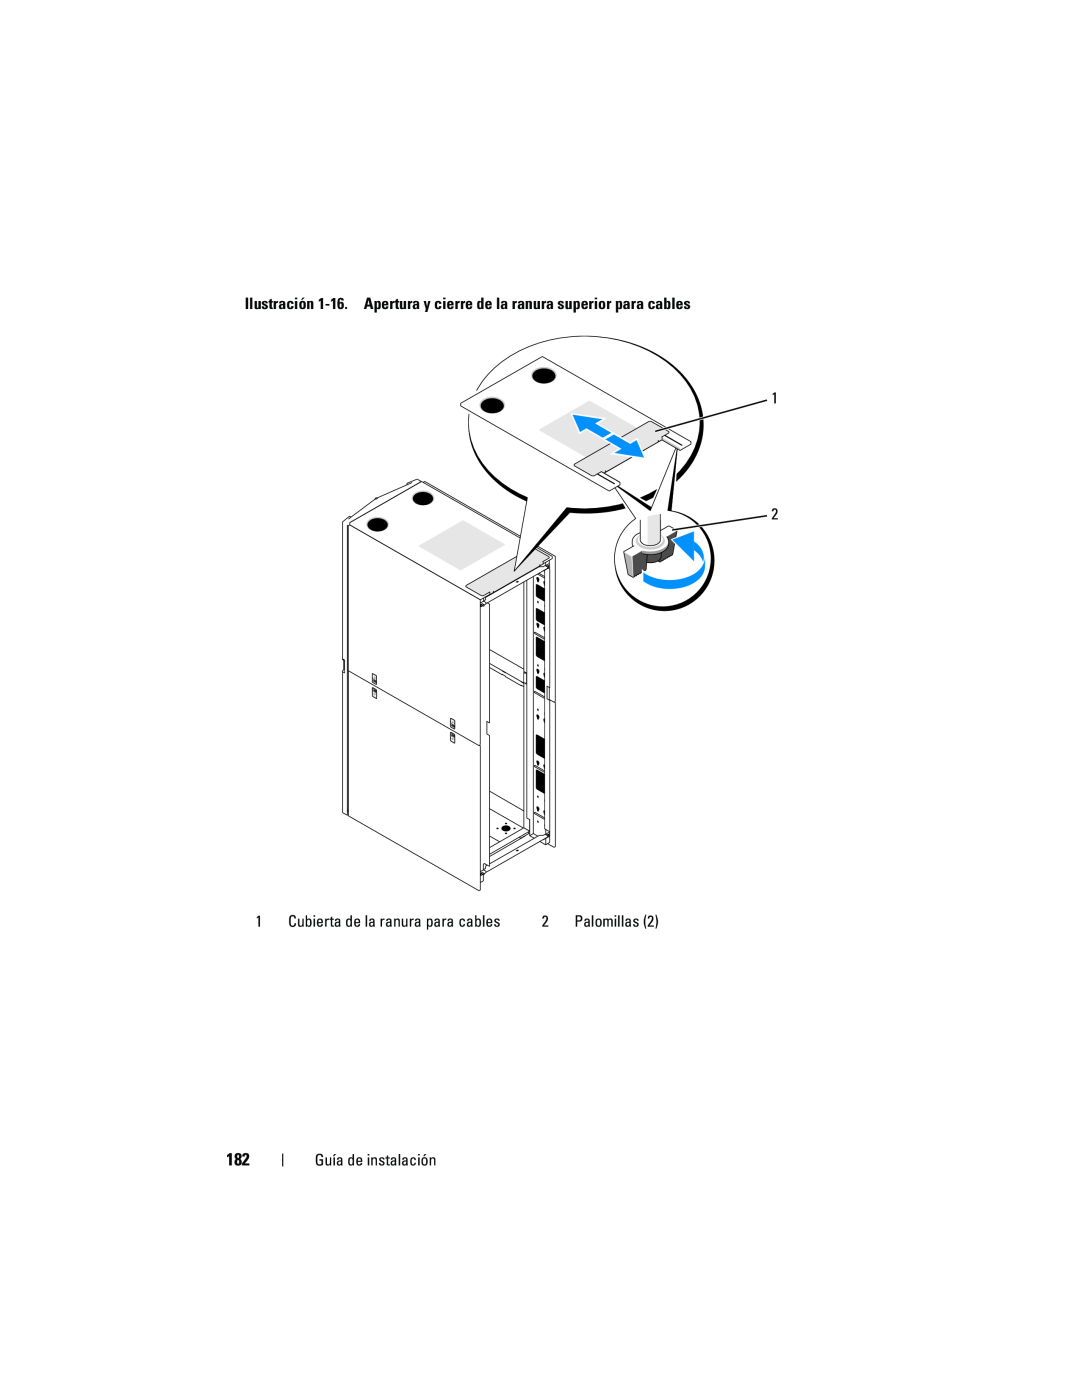 Dell 4220 manual Ilustración 1-16. Apertura y cierre de la ranura superior para cables, Guía de instalación, Palomillas 